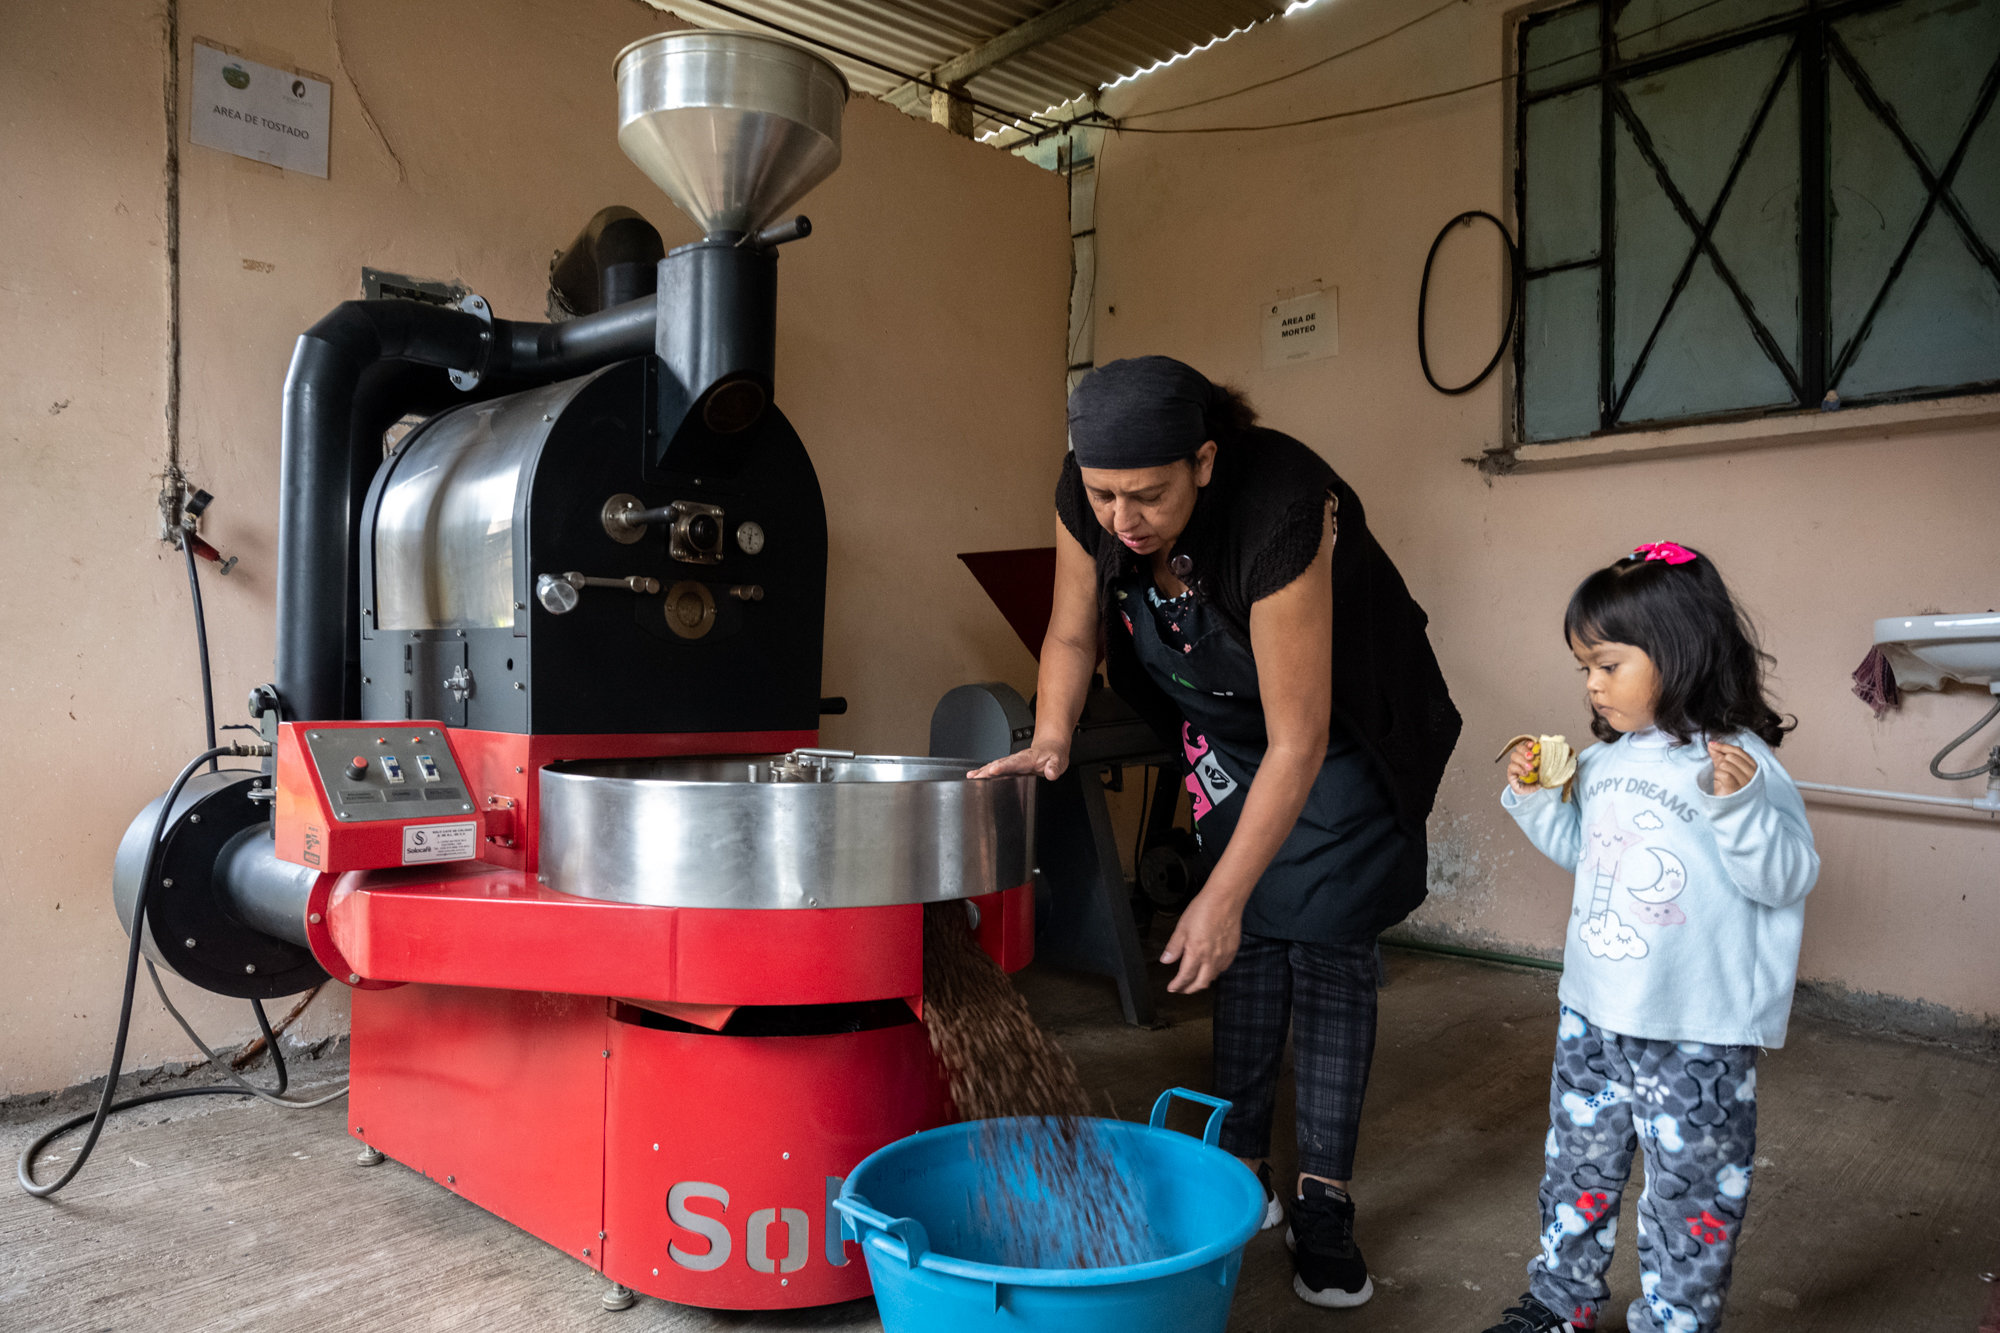 コーヒー生産者の地位向上を目指すメキシコ女性たちの現在地